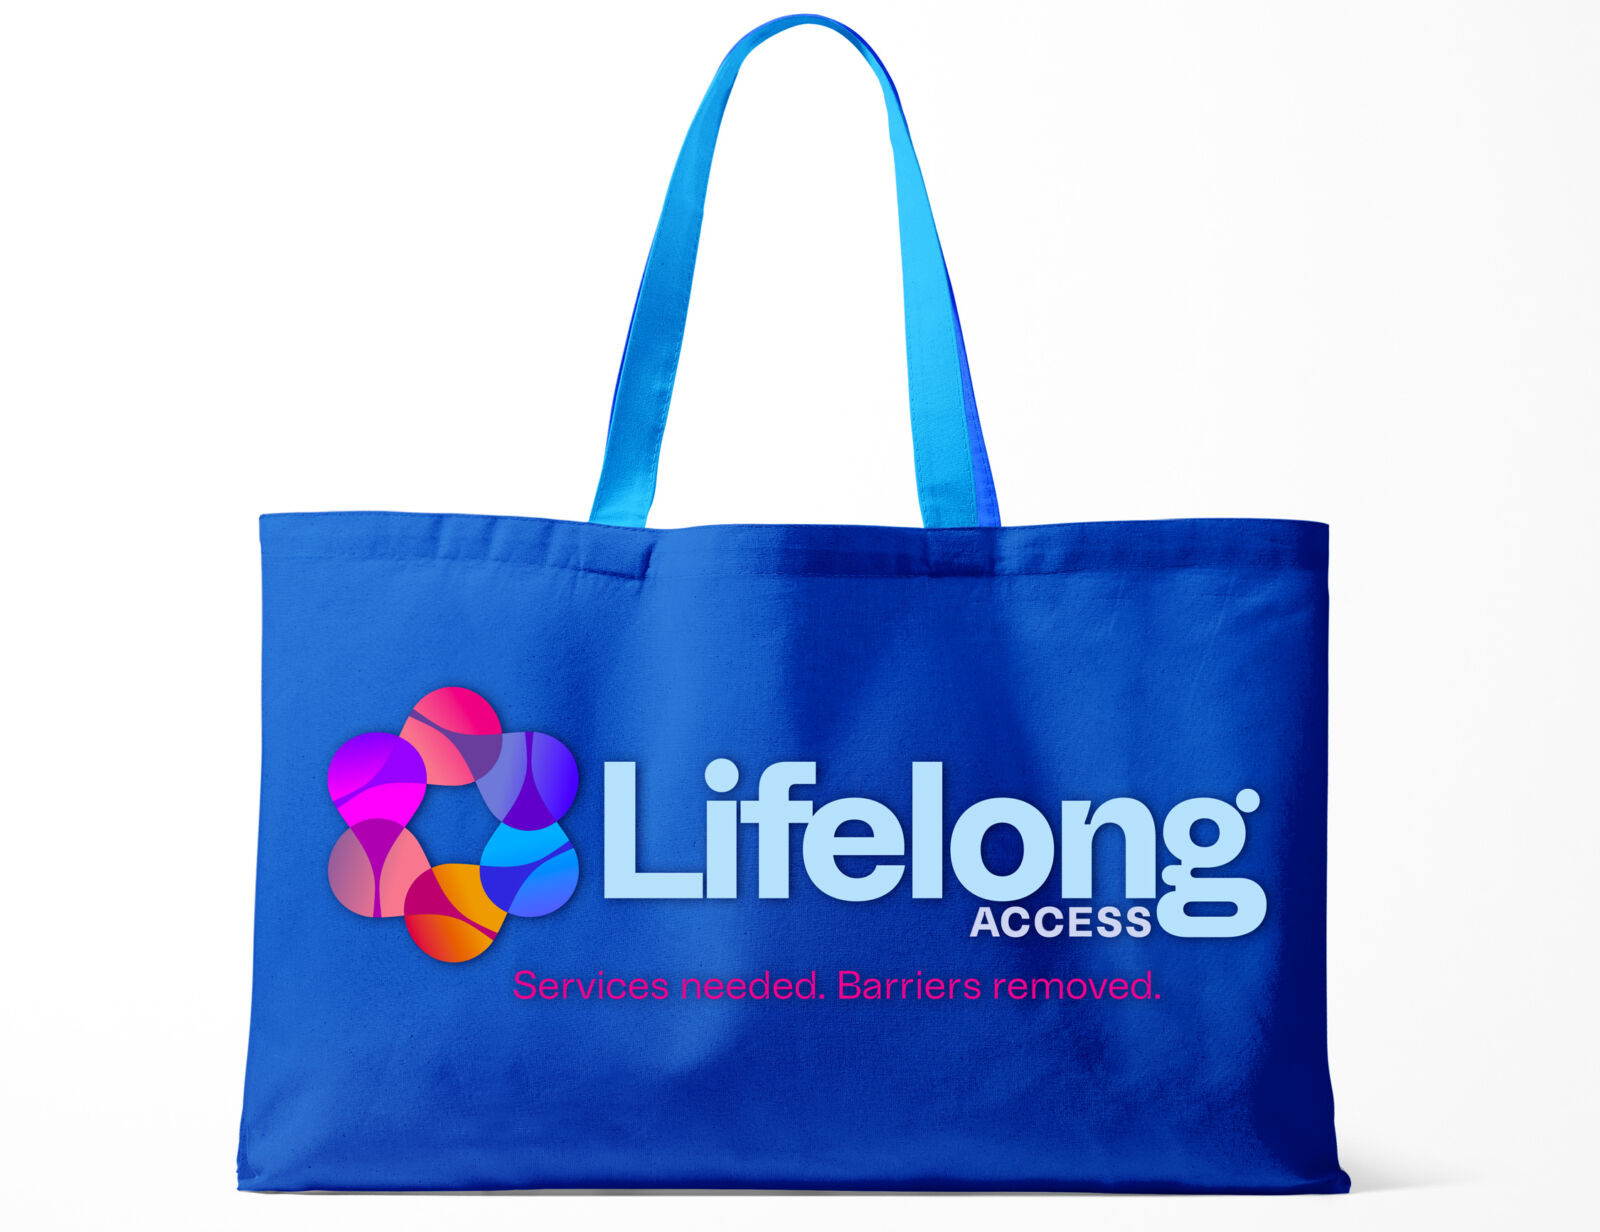 Lifelong Access rebrand pouch